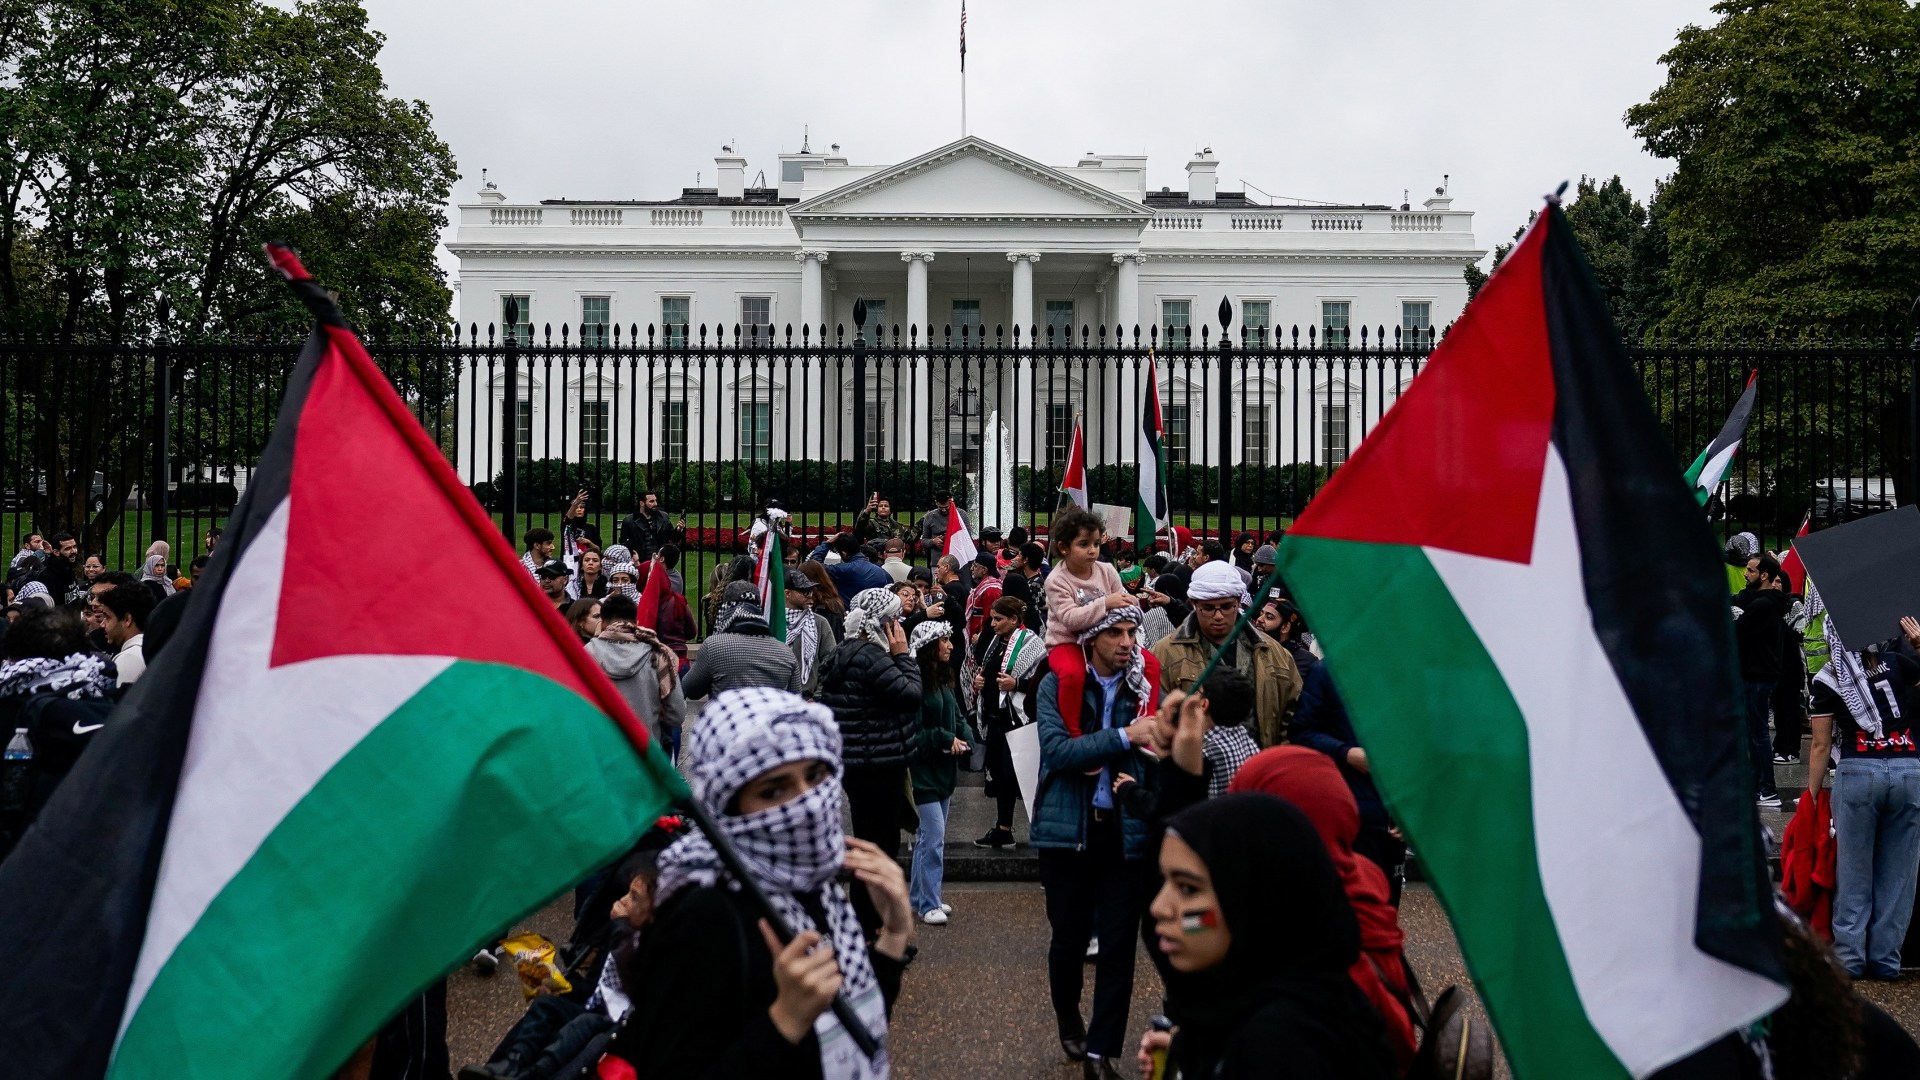 “Kërkojmë të dënohet shkelja e ligjit ndërkombëtar”, vazhdojnë protestat pro-palestineze të studentëve në SHBA dhe Evropë!